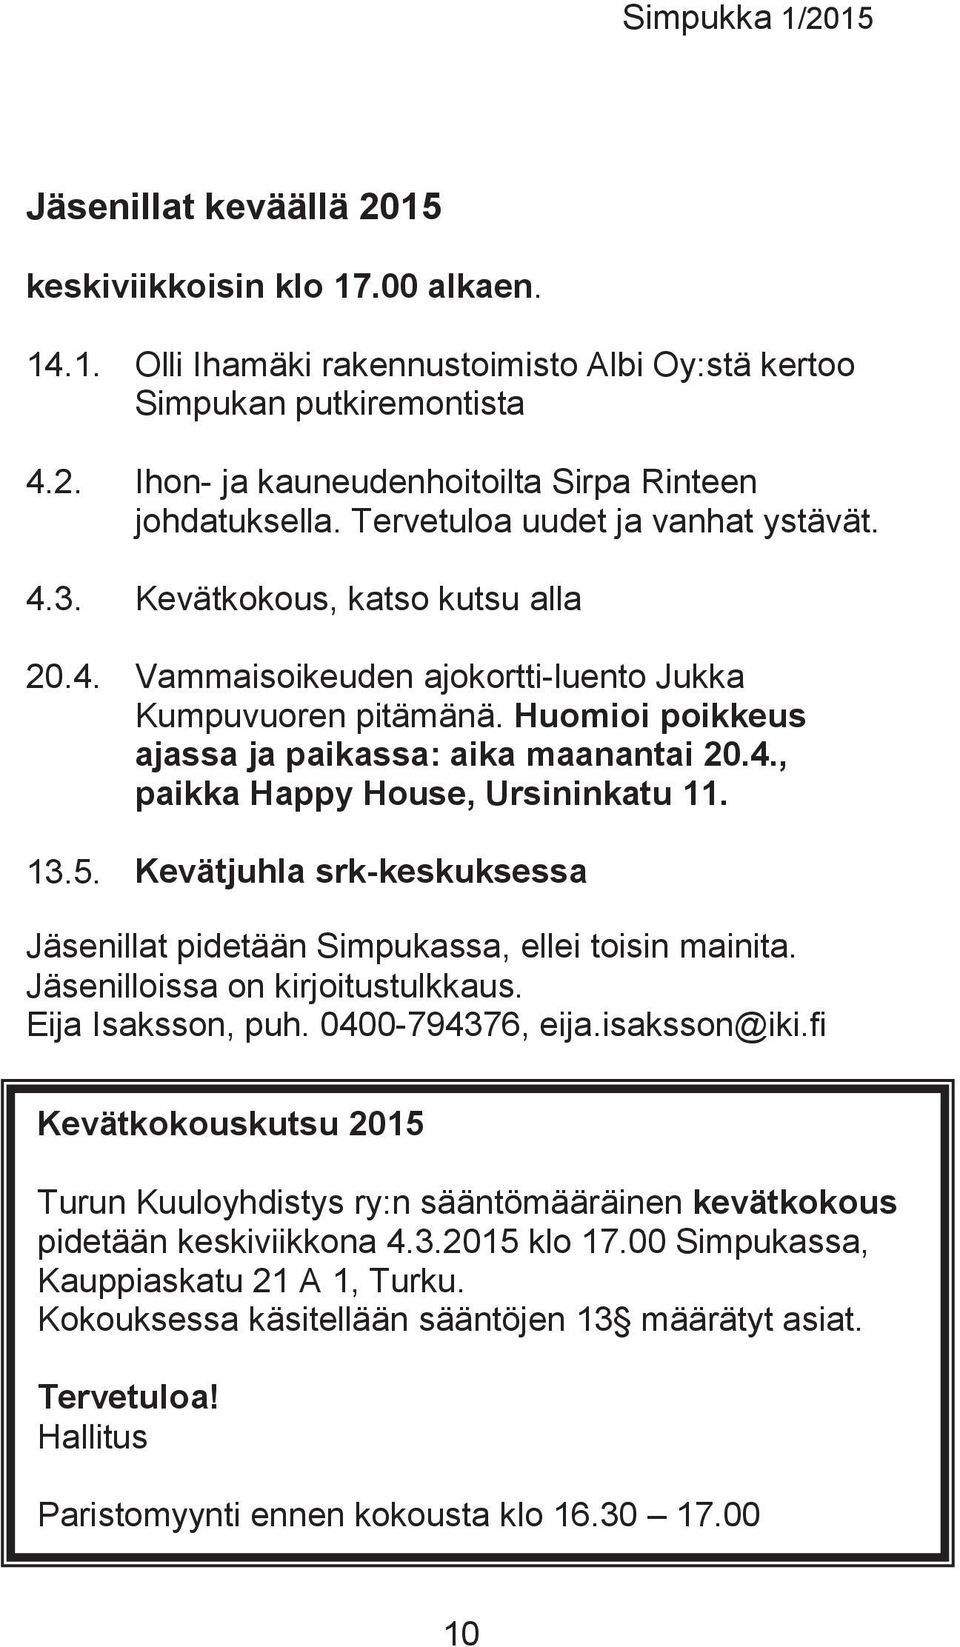 13.5. Kevätjuhla srk-keskuksessa Jäsenillat pidetään Simpukassa, ellei toisin mainita. Jäsenilloissa on kirjoitustulkkaus. Eija Isaksson, puh. 0400-794376, eija.isaksson@iki.